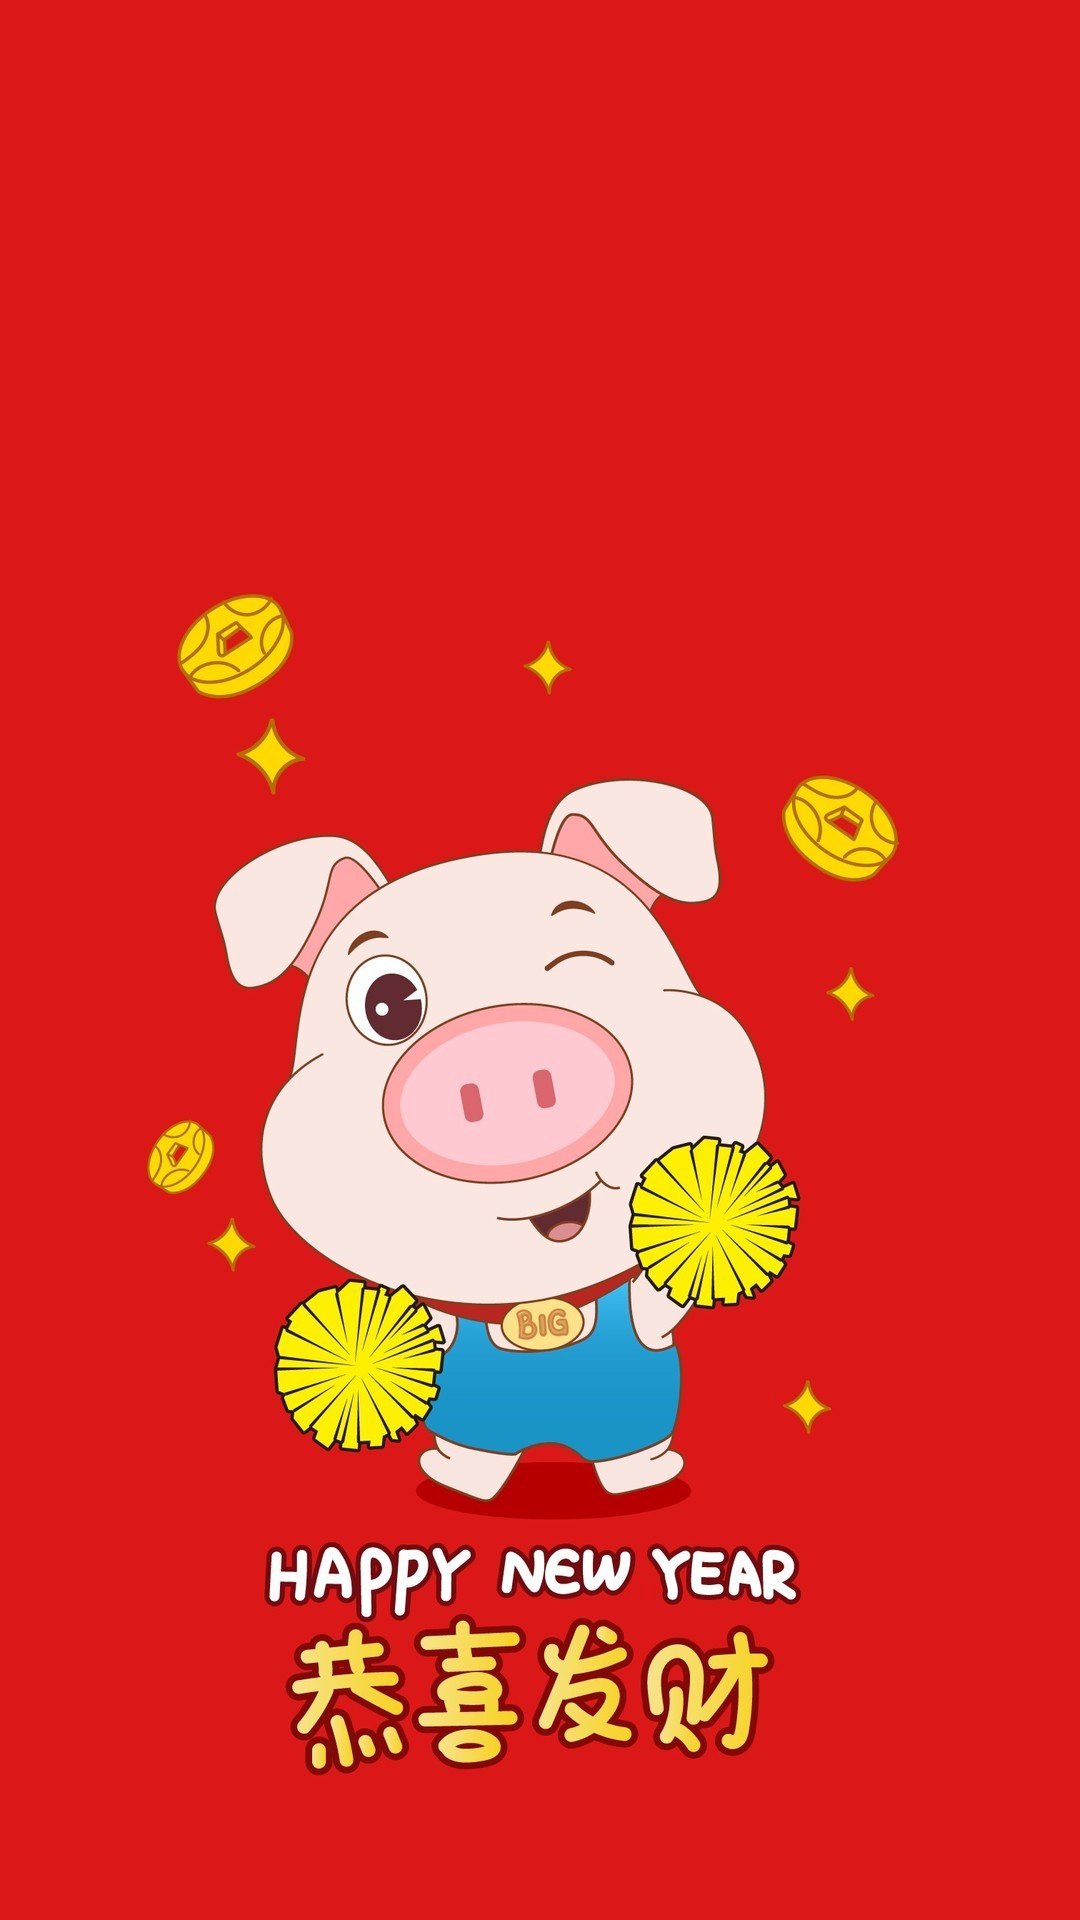 可爱小猪祝恭喜发财,高清图片,手机壁纸